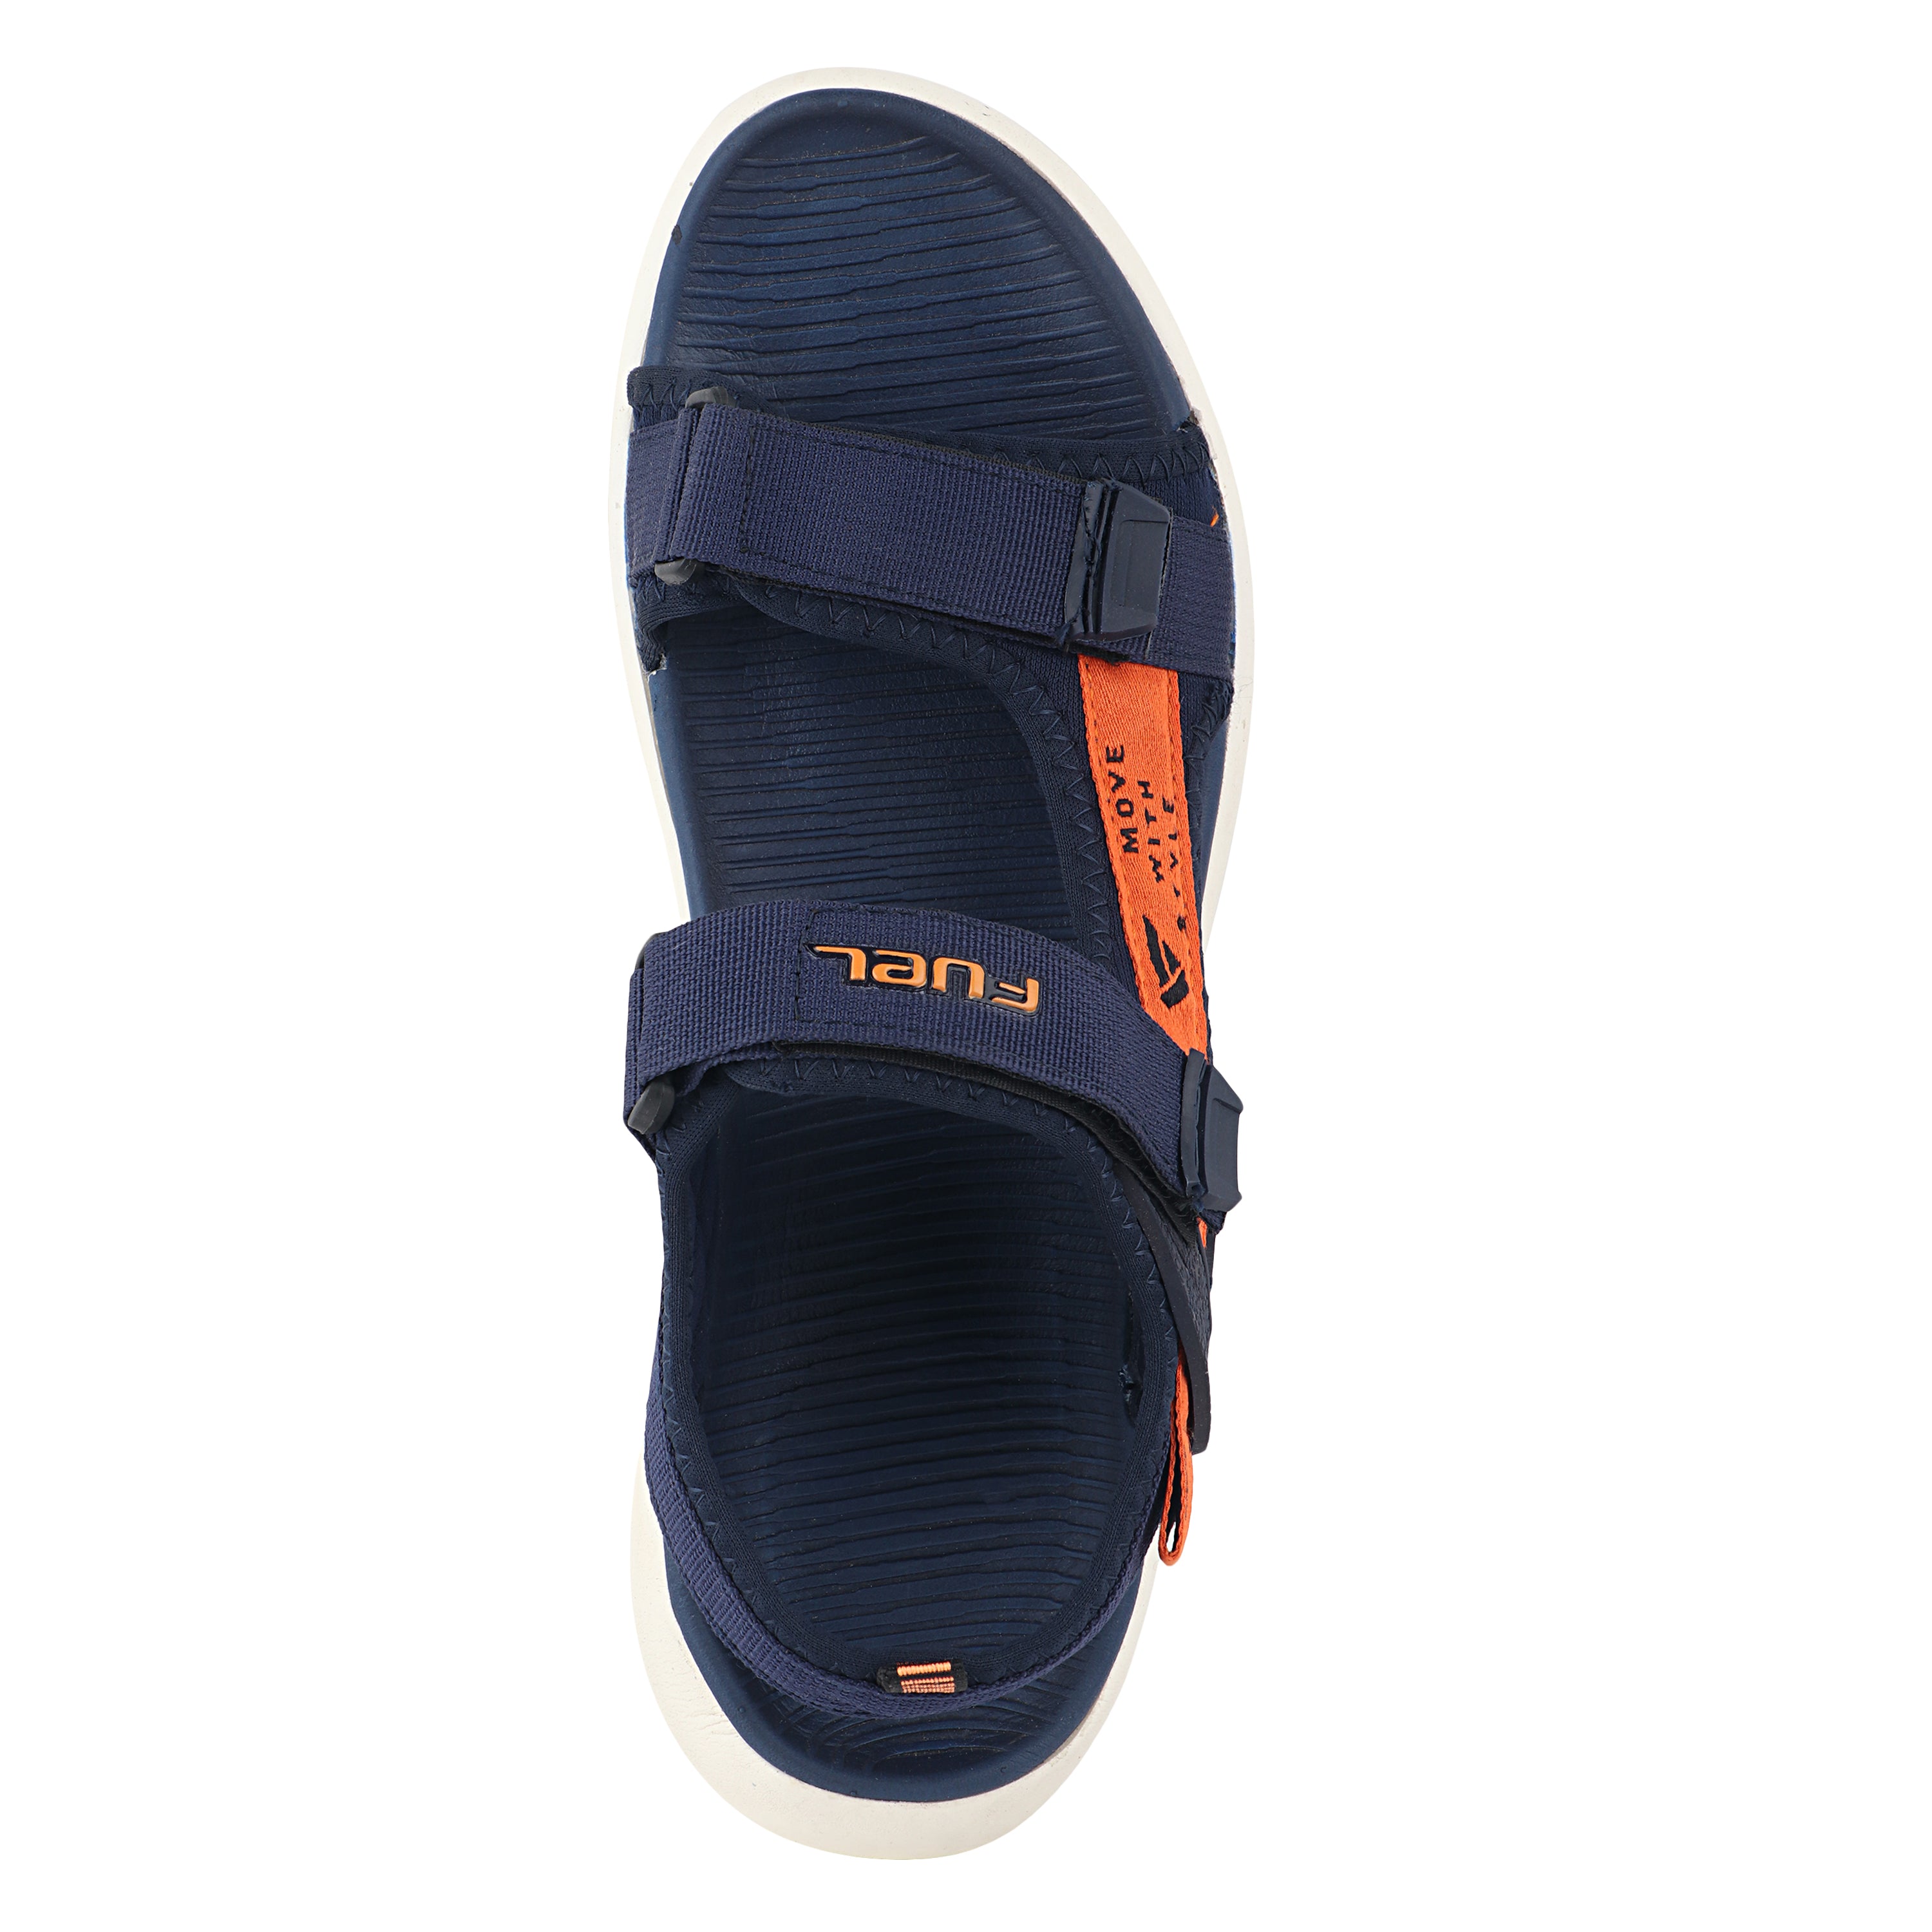 Fuel Power-02 Sandals For Men's (Navy-Orange)